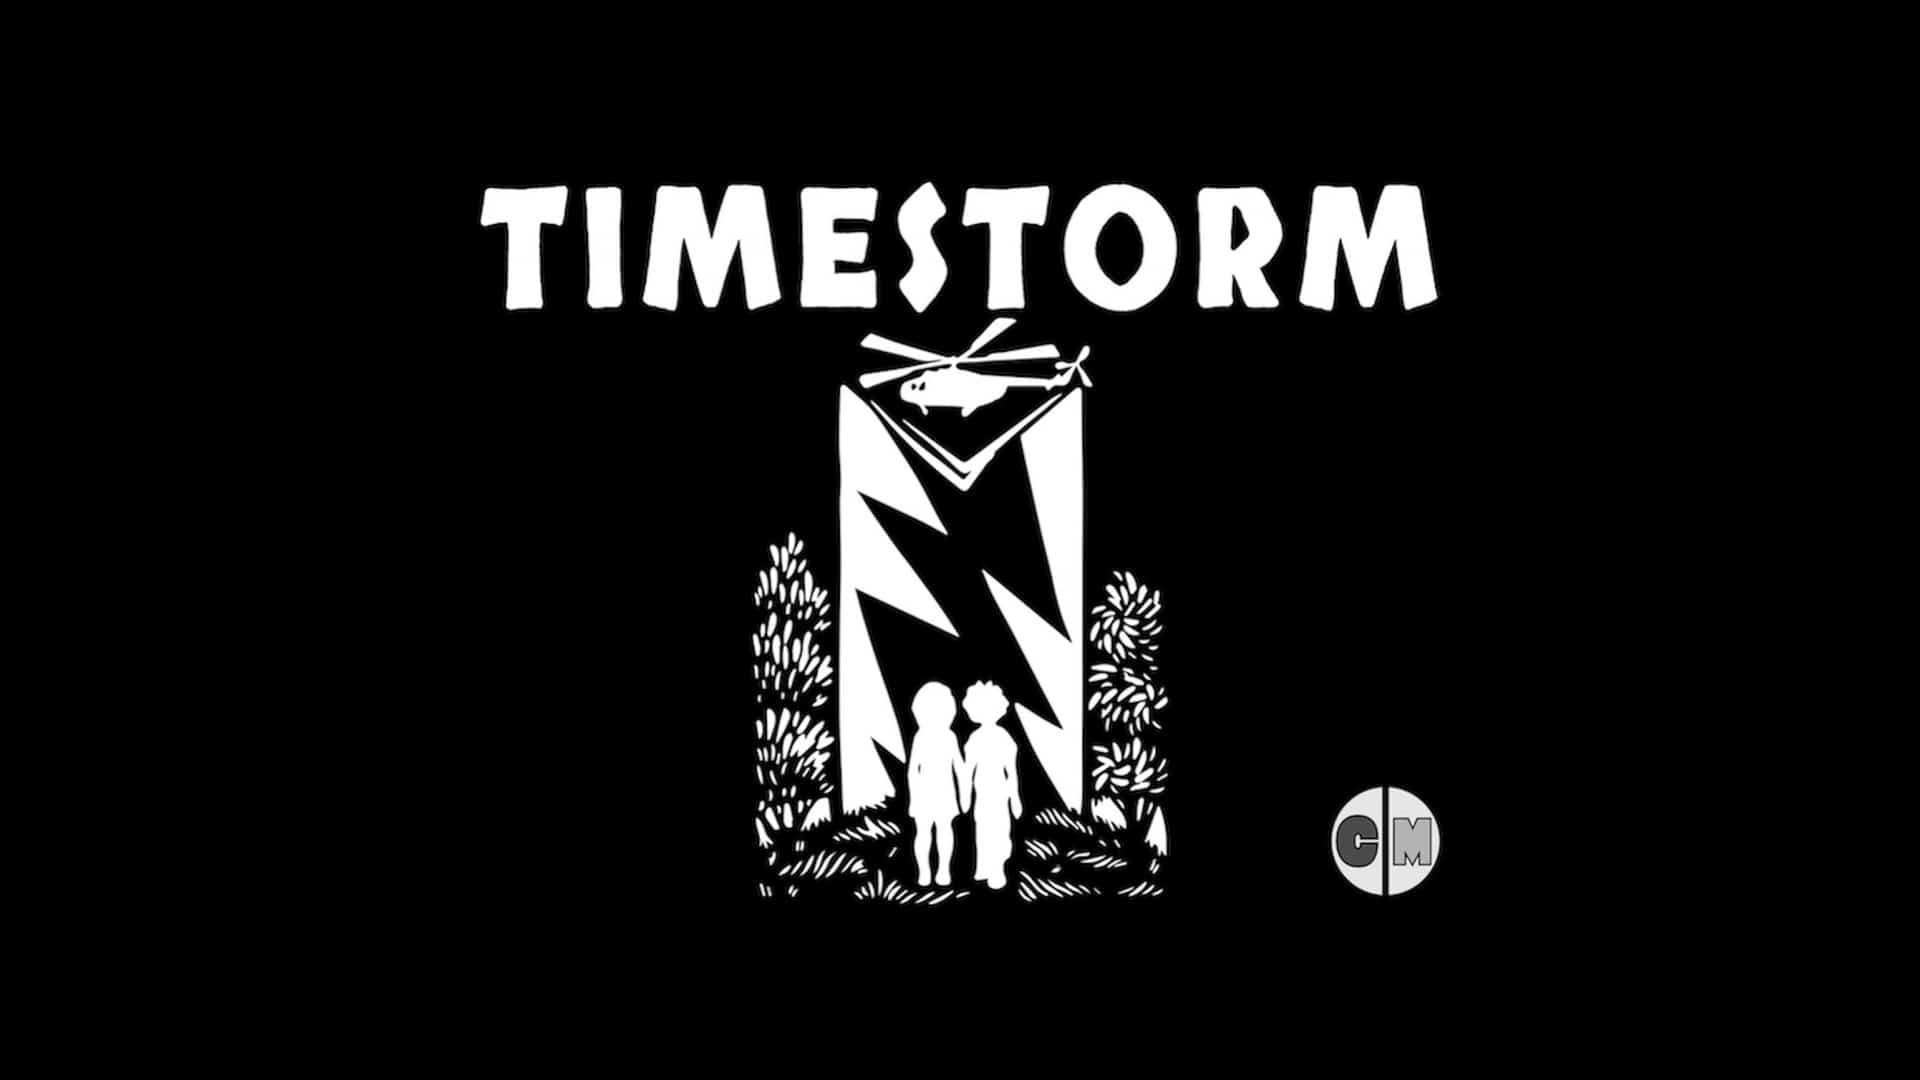 Timestorm Kids Story by Dania Ramos